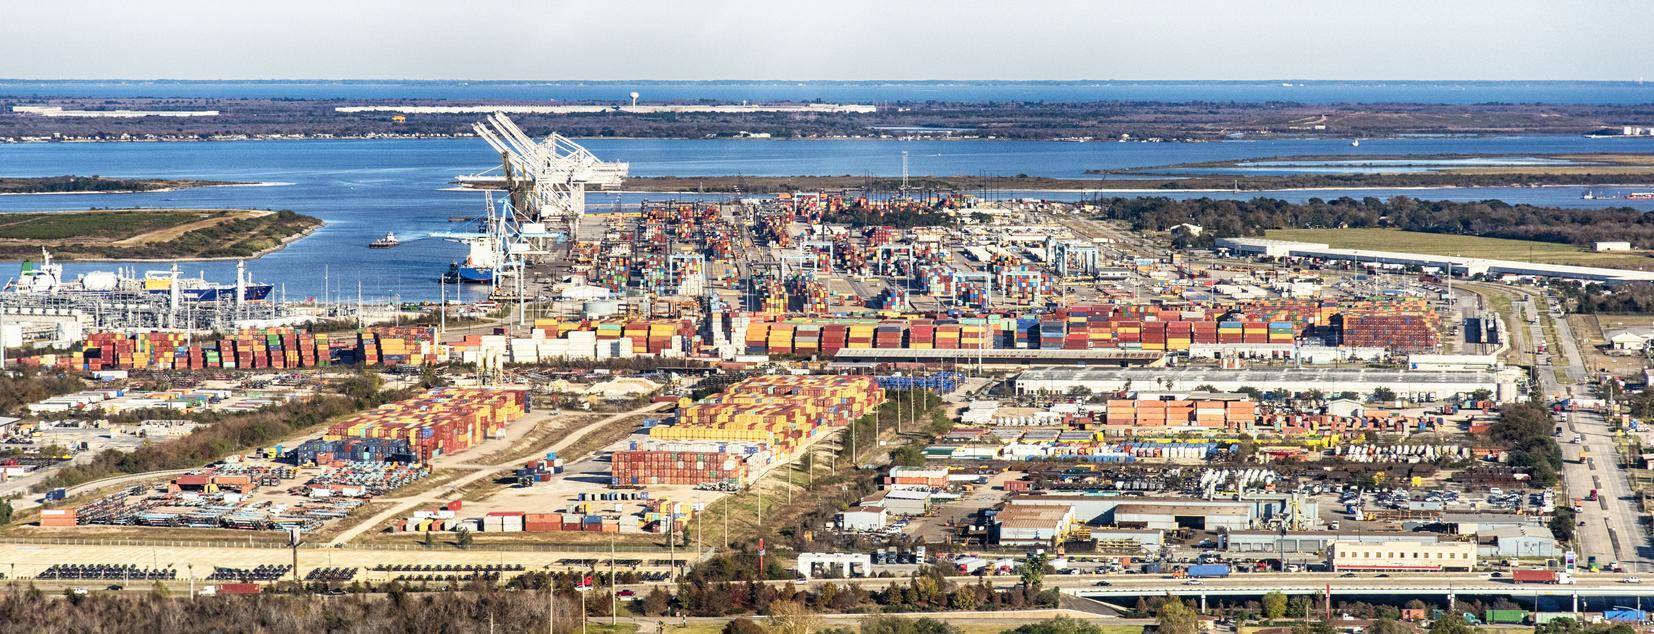 休斯顿港10月集装箱吞吐量创历史第二高